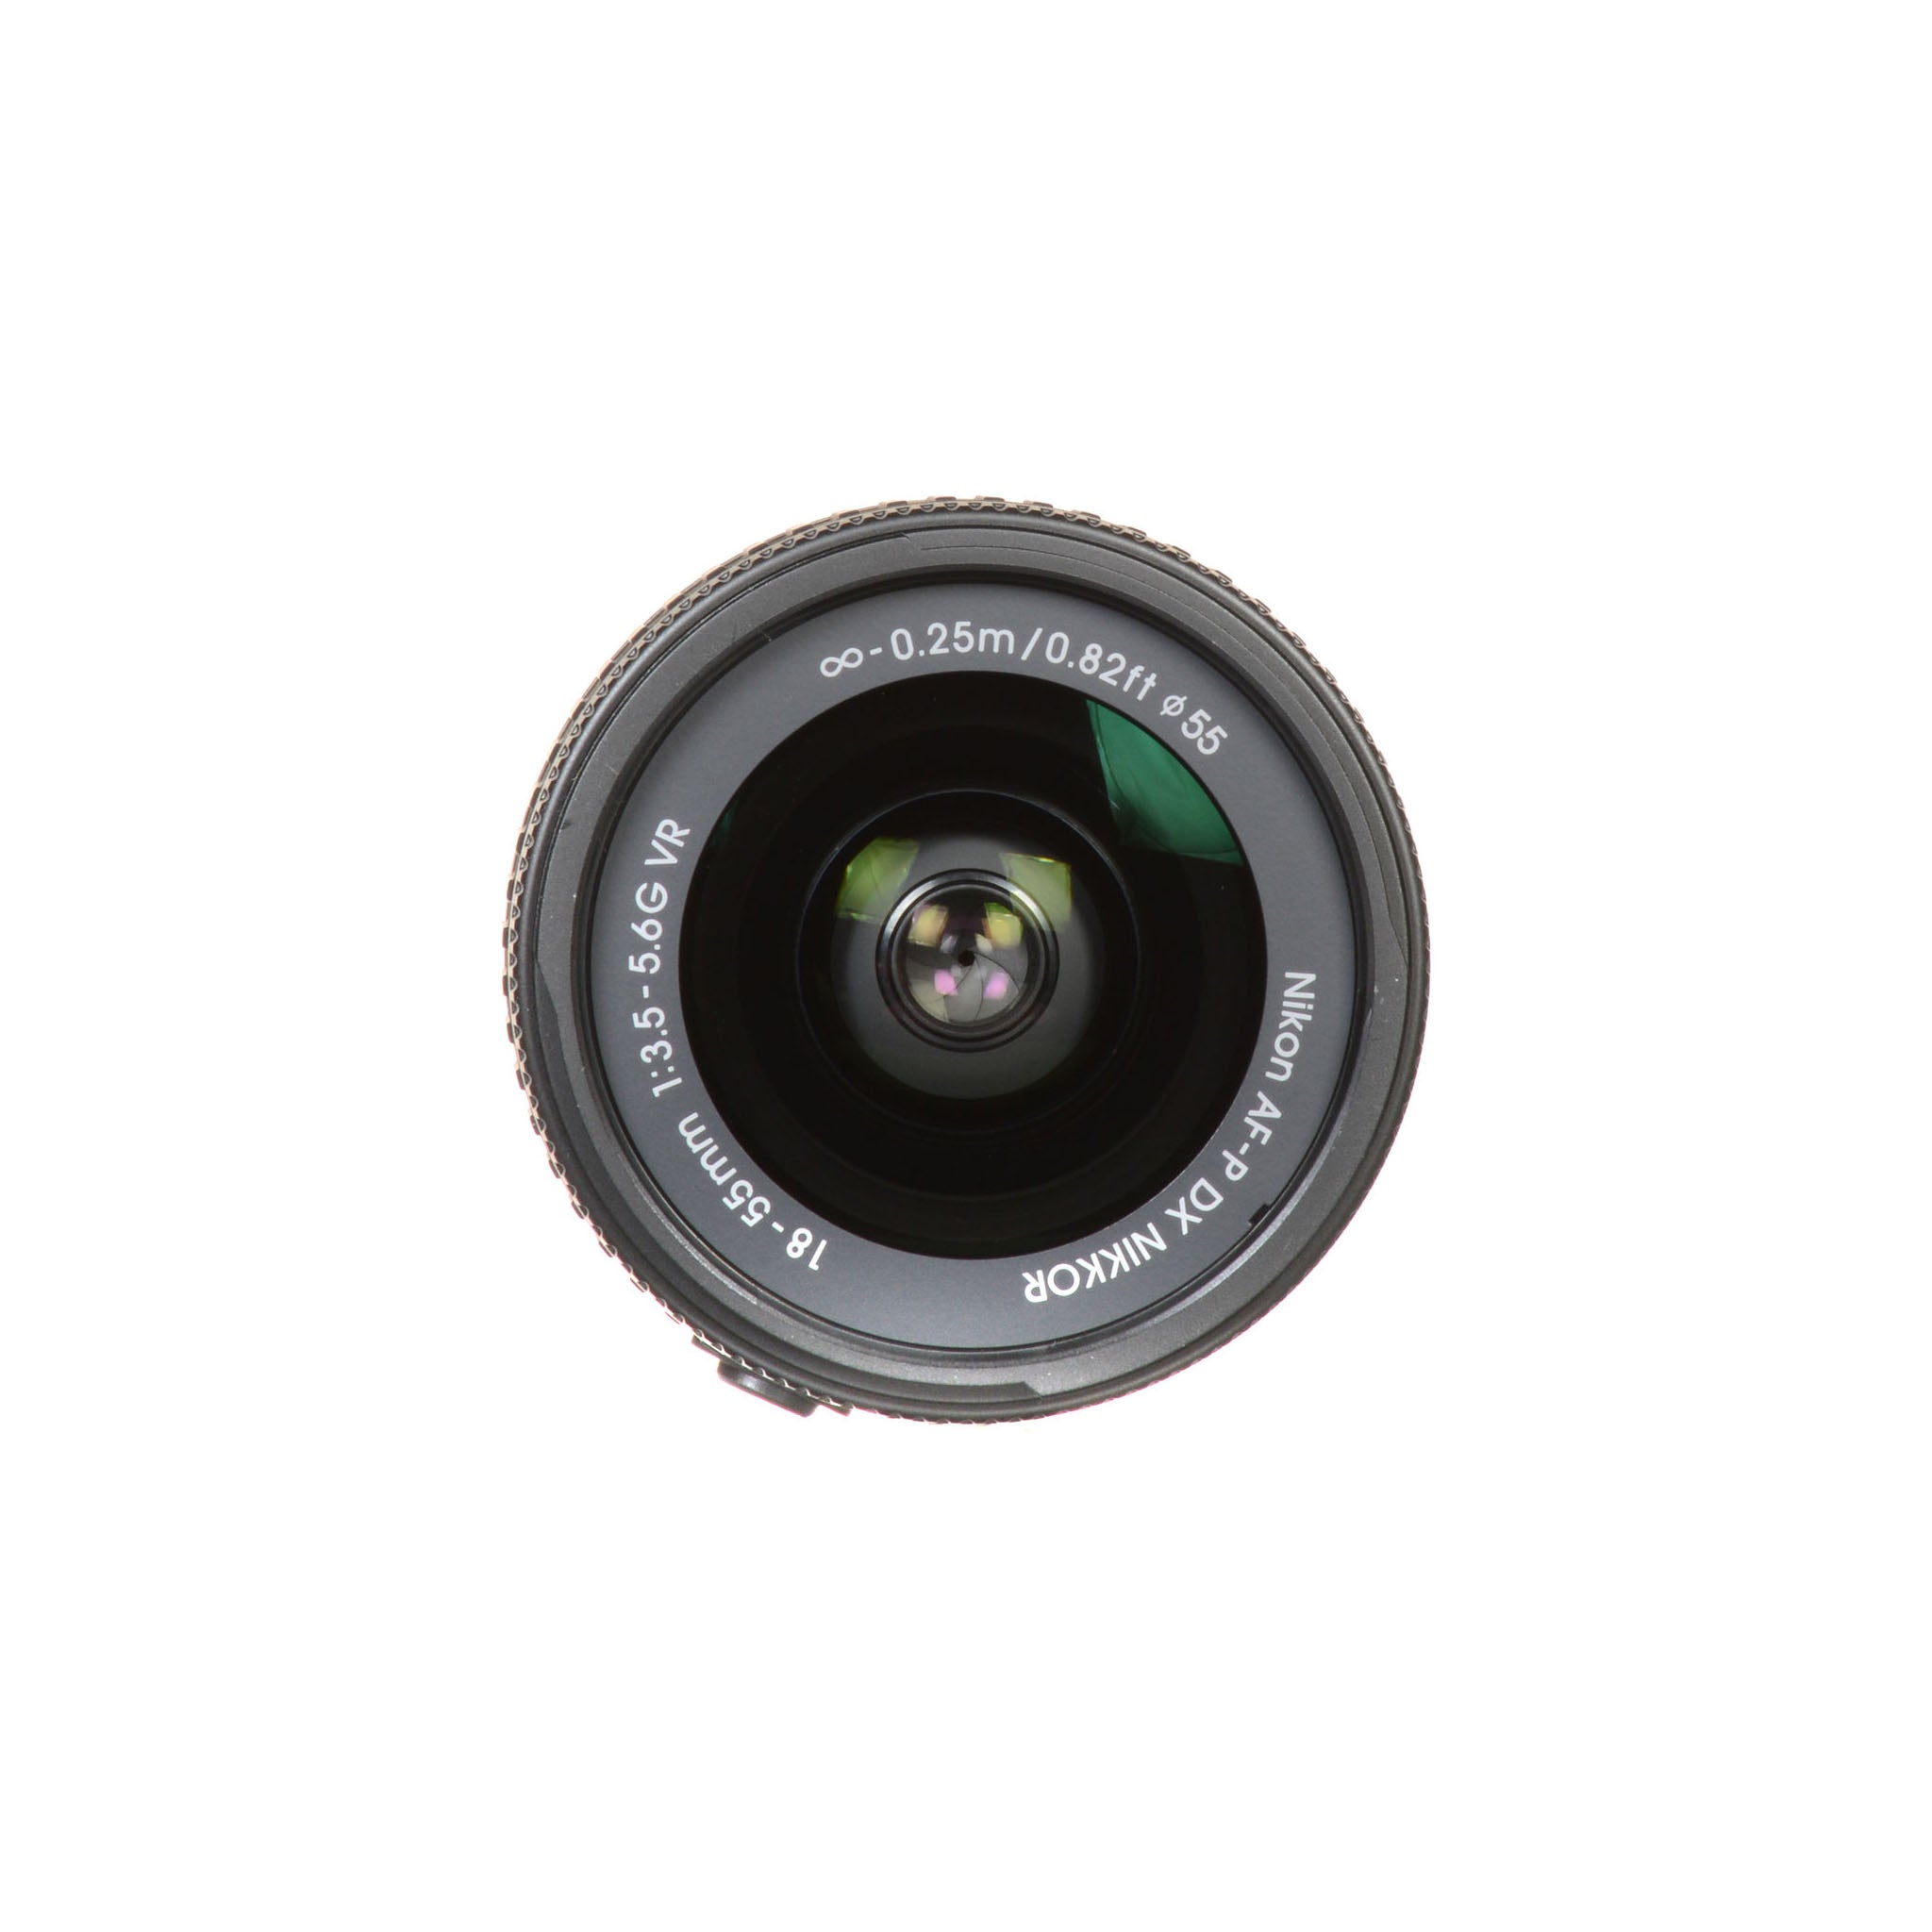 Nikon AF-P 18-55mm F3.5-5.6G VR DX Lens